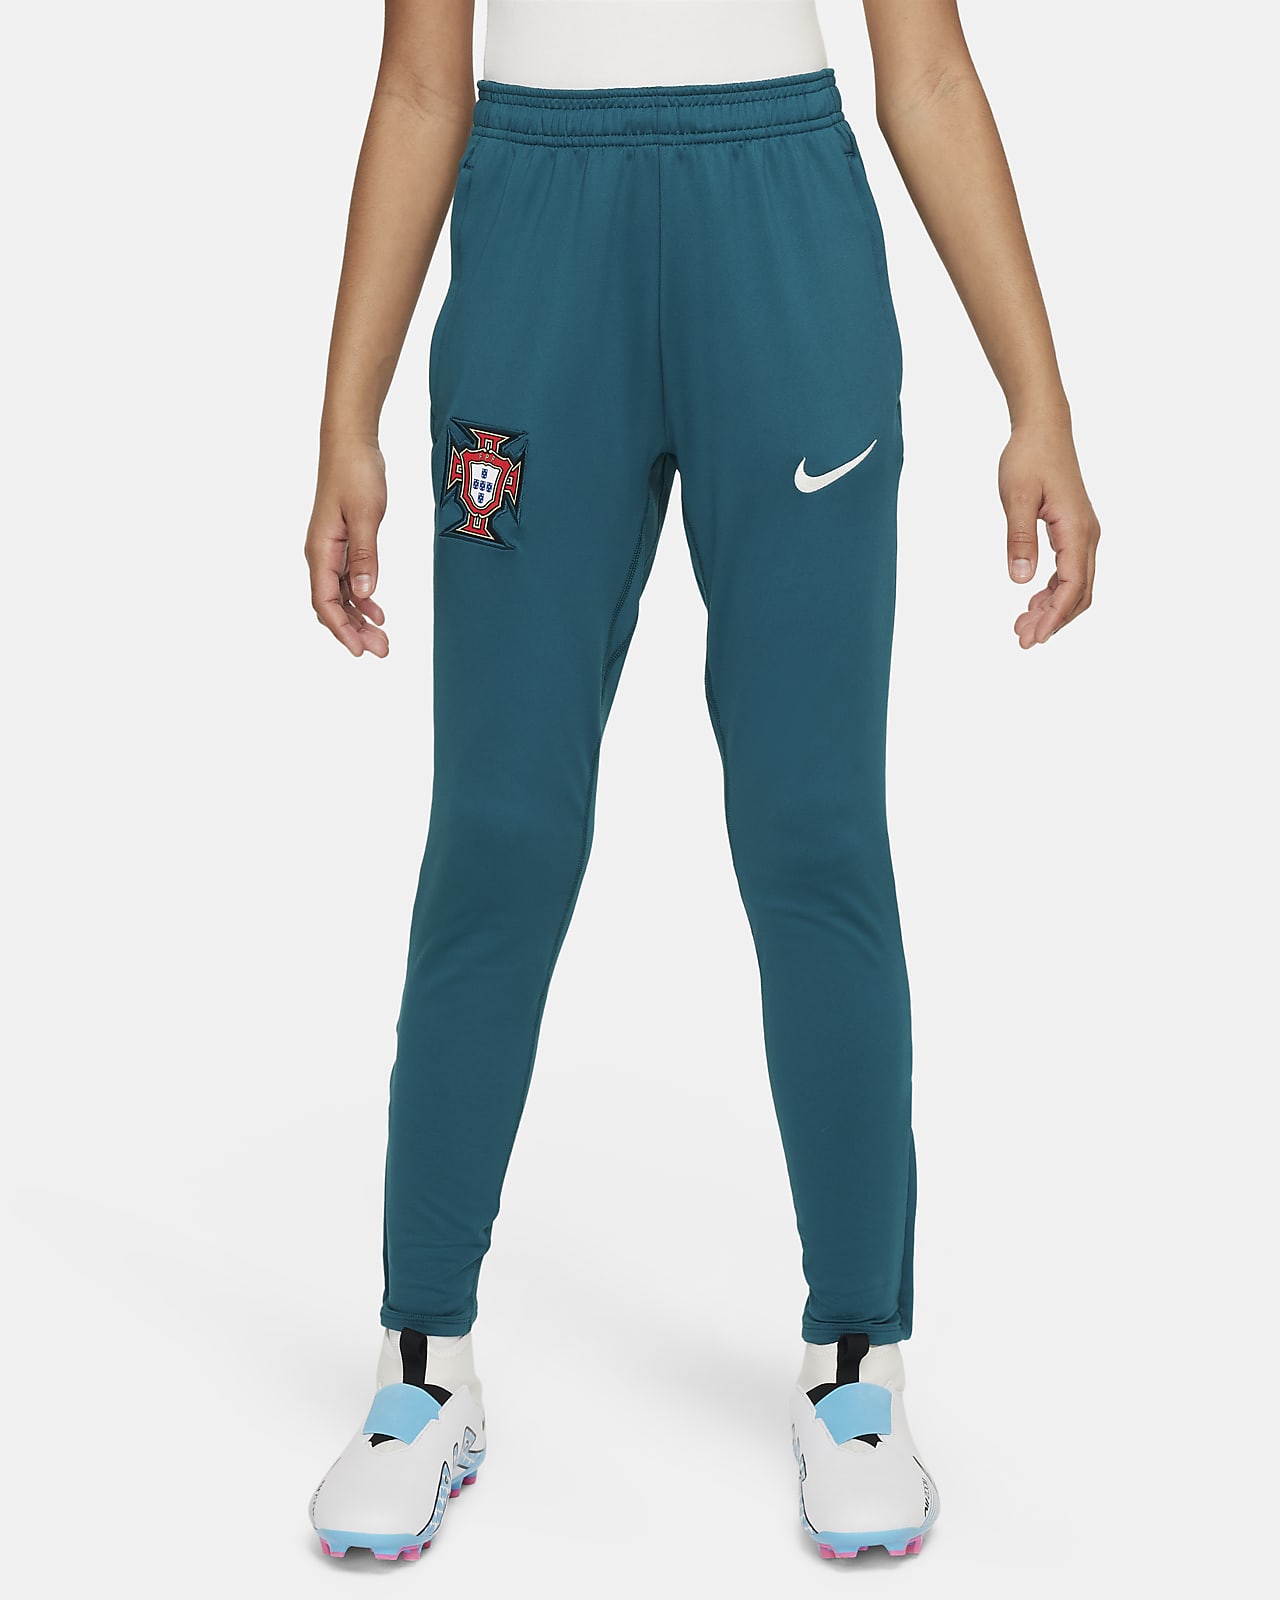 Ποδοσφαιρικό πλεκτό παντελόνι Πορτογαλία Nike Dri-FIT Strike για μεγάλα παιδιά